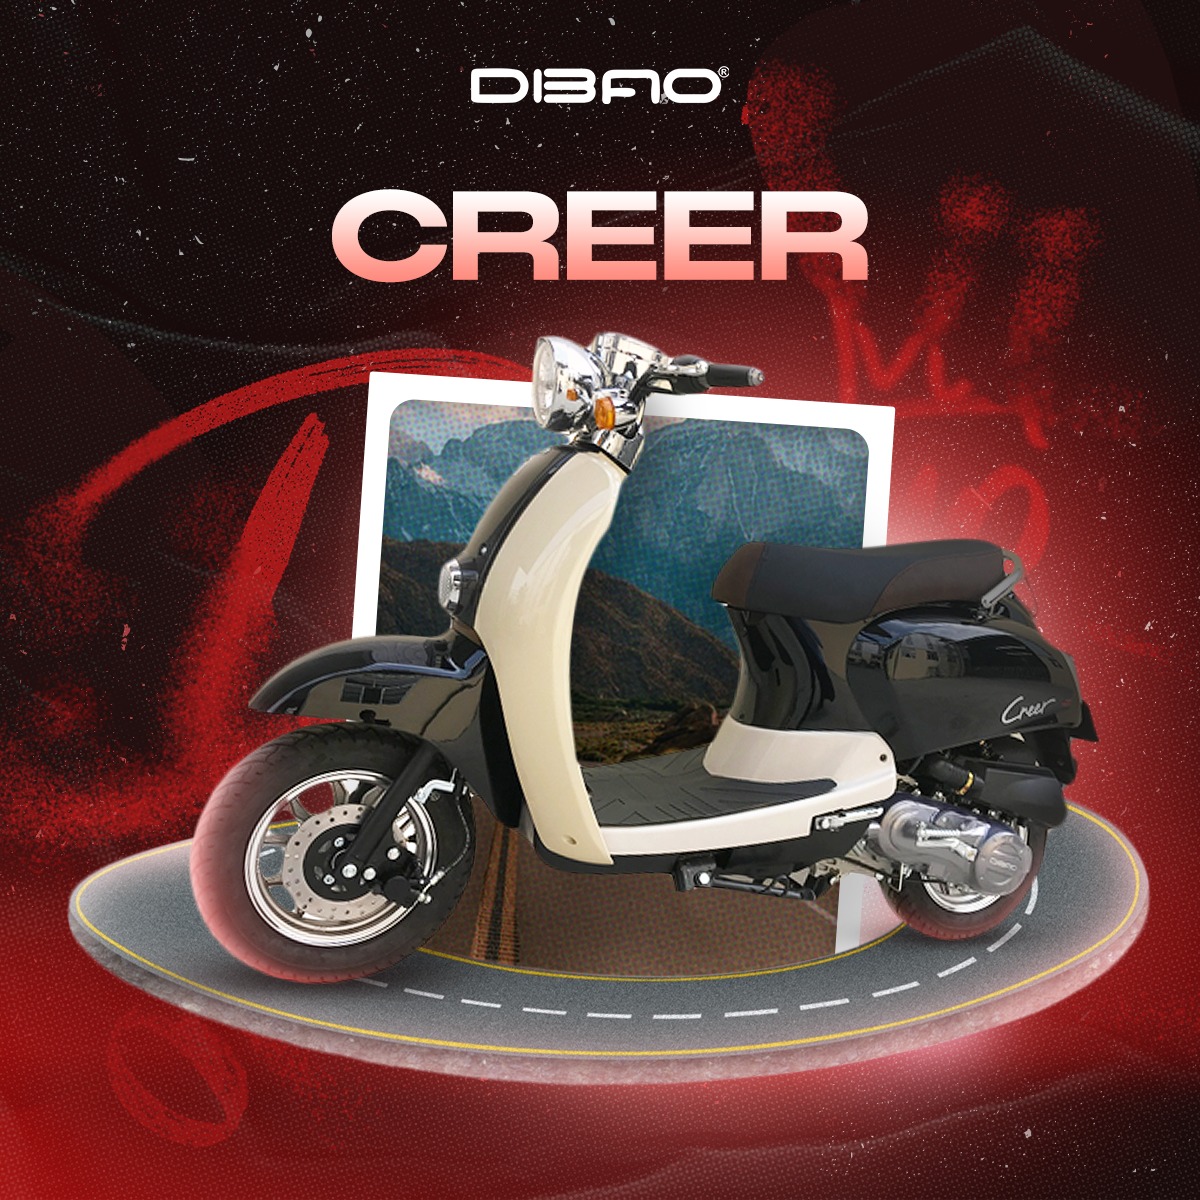 Siêu phẩm xe ga 50cc dành cho phái đẹp: Creer Dibao 50cc Nhỏ Gọn Dáng Xinh